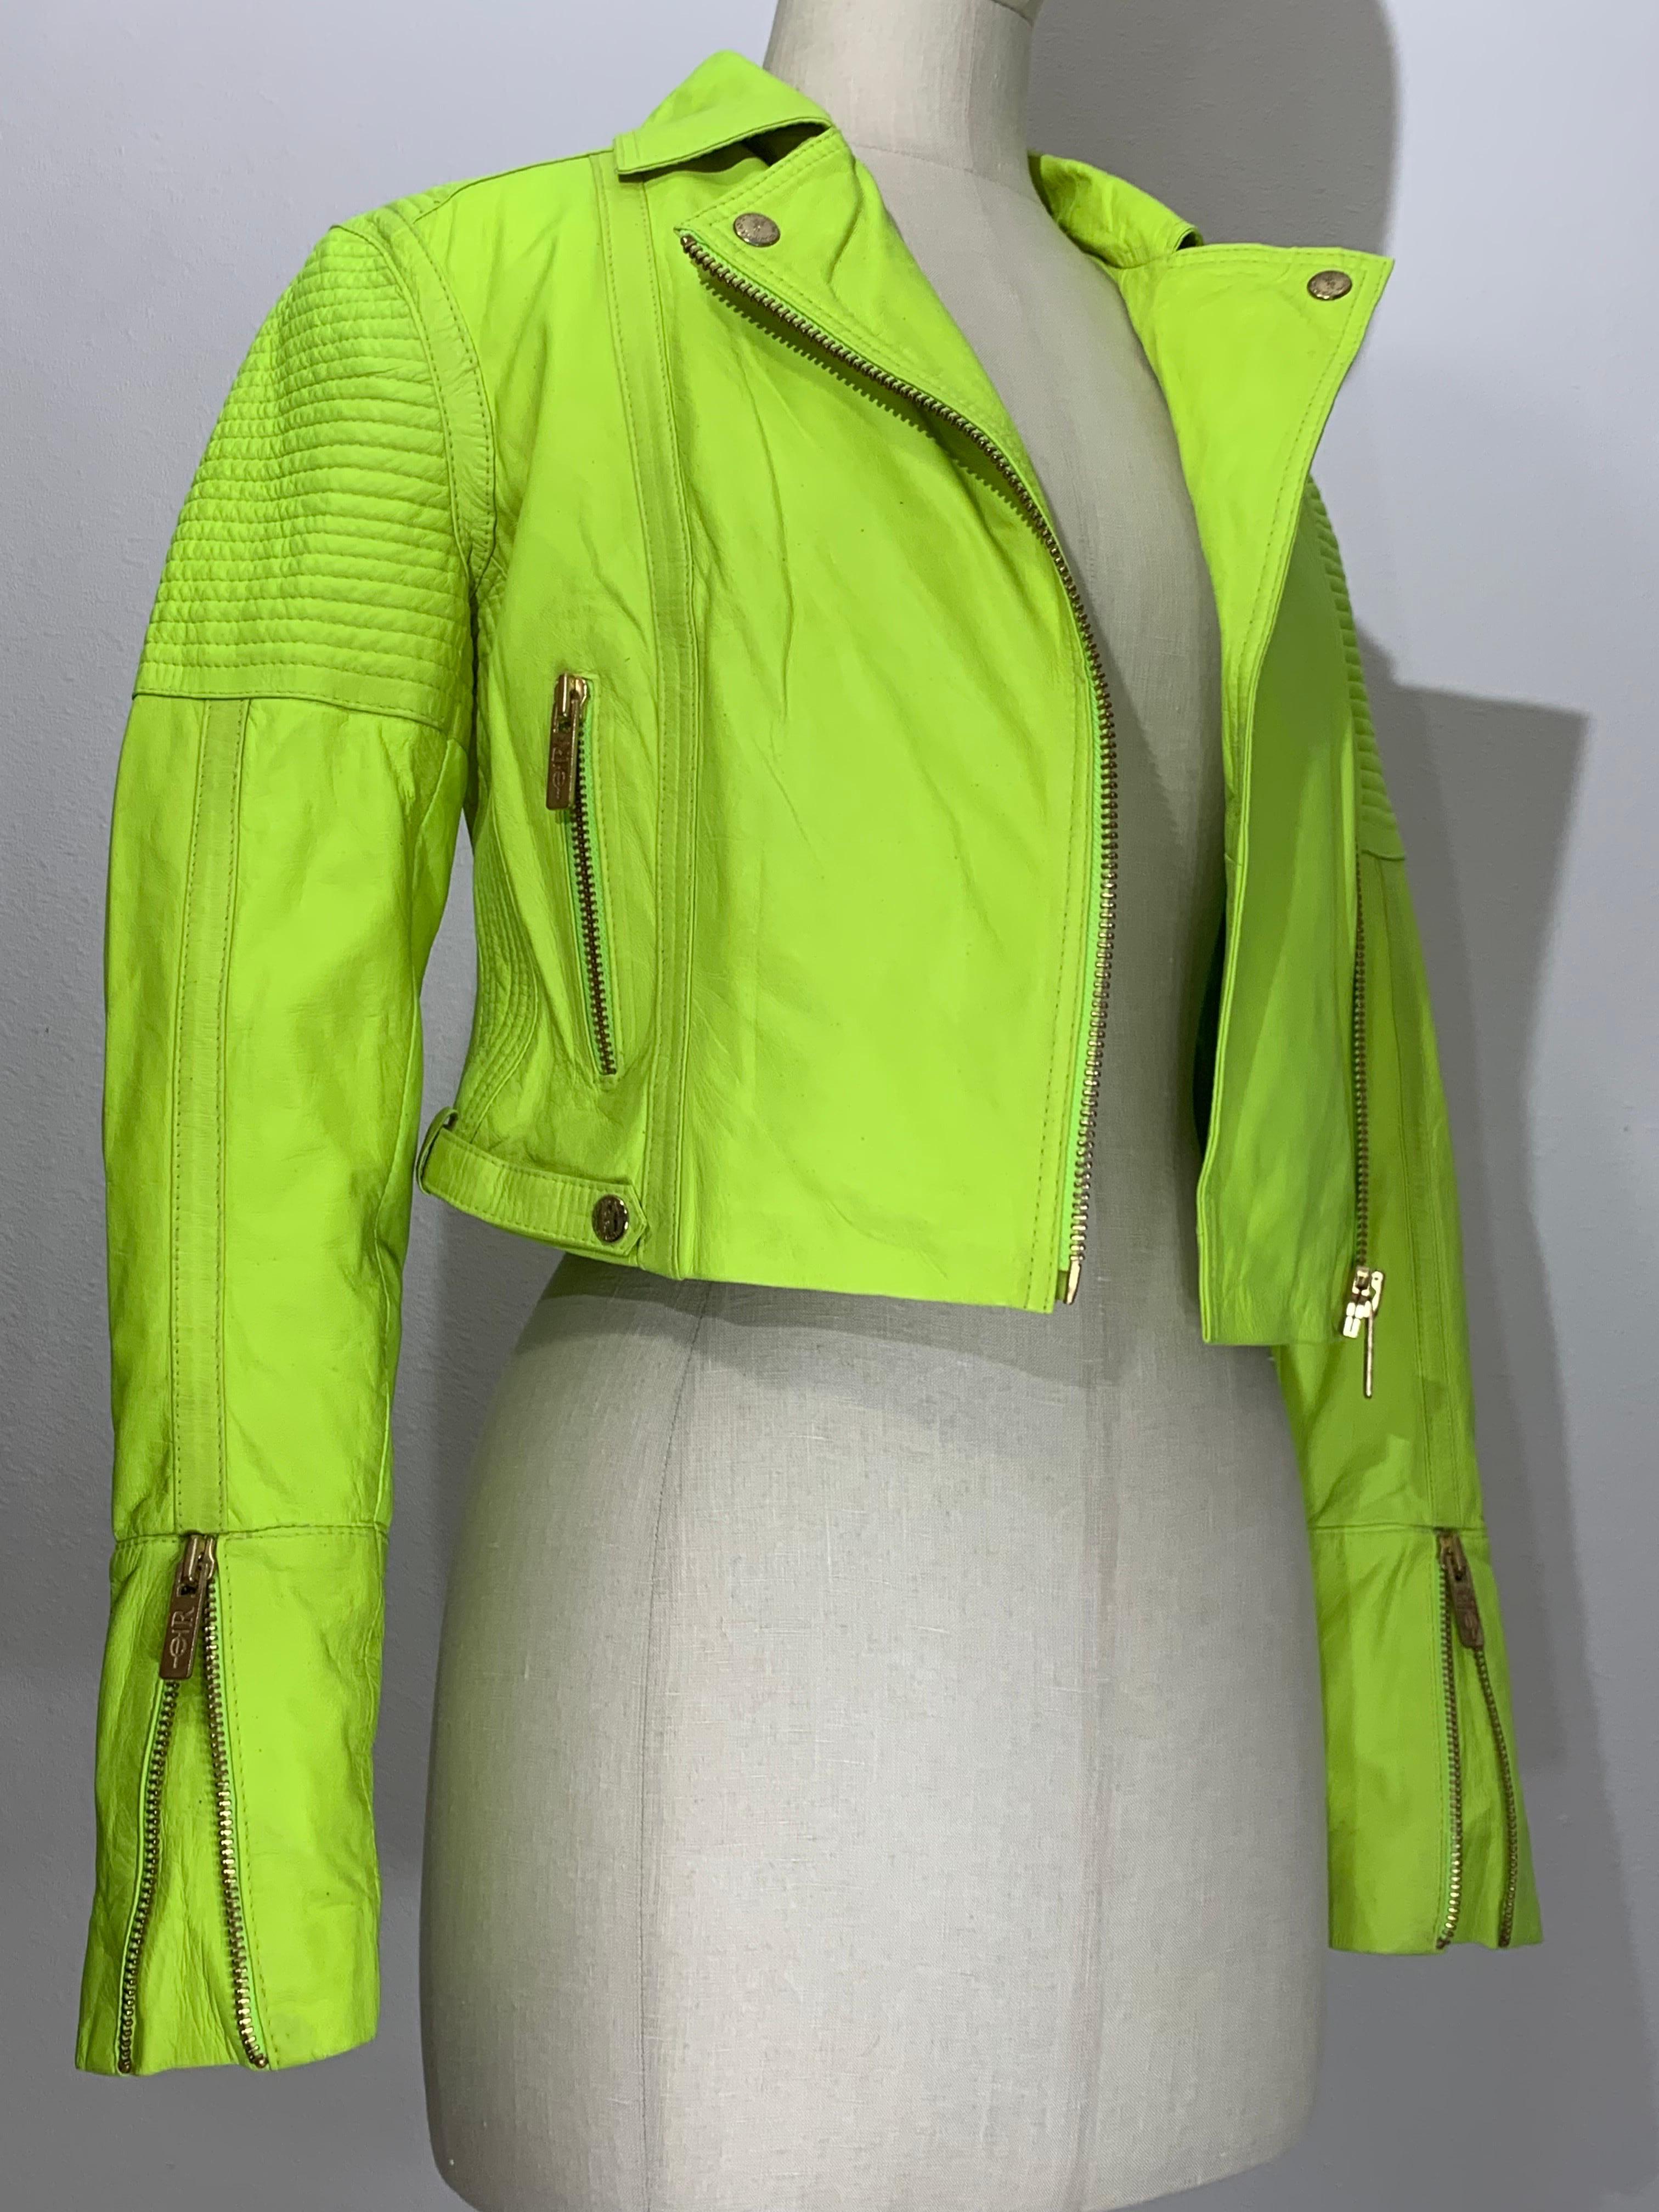 Veste de moto en cuir vert fluo avec épaules et fermetures à glissière matelassées :  Fermeture à glissière asymétrique, poche frontale zippée et manches fuselées zippées. Les épaules sont matelassées pour un style 